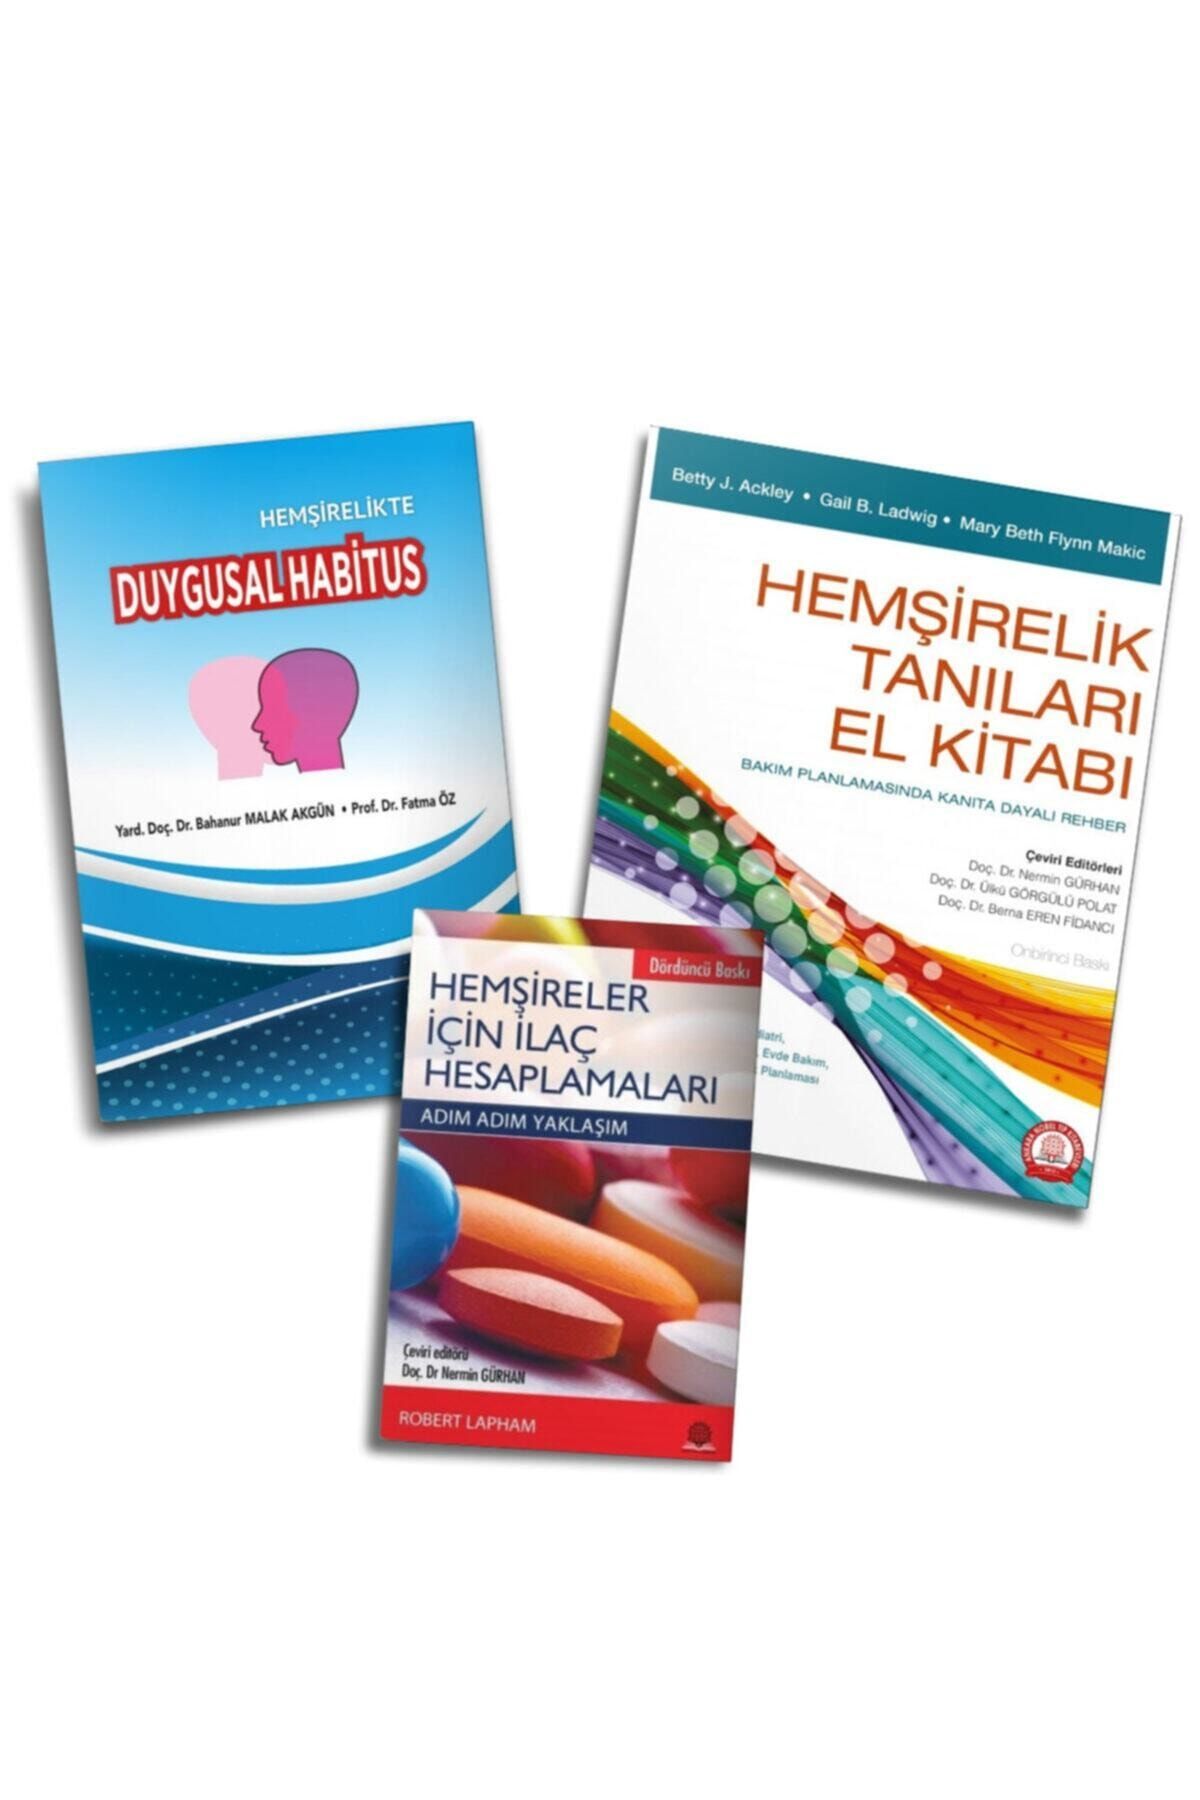 Ankara Nobel Tıp Kitapevleri Hemşirelik Tanıları Kitabı - Hemşirelik Ilaç Hesaplamaları - Hemşirelikte Duygusal Habitus Üçlü Set